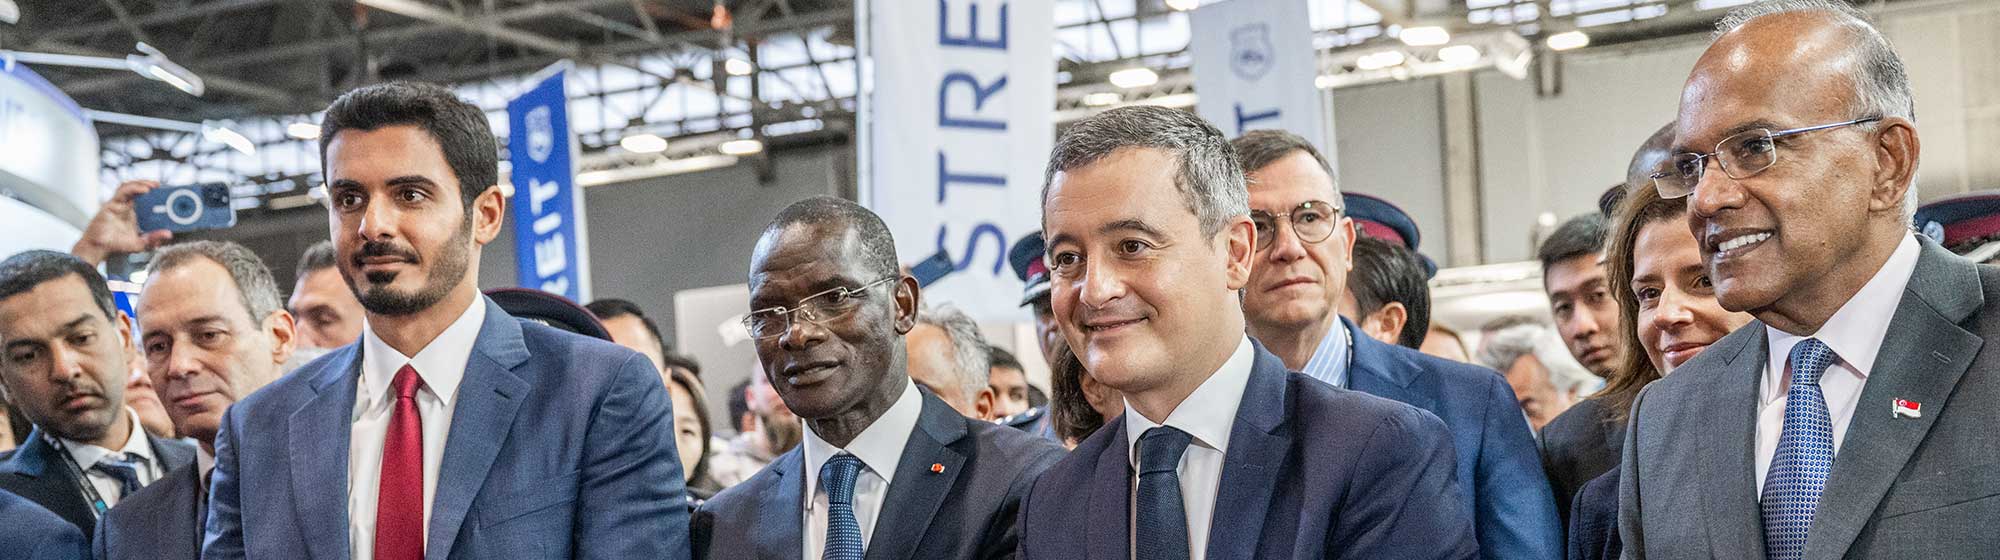 Gérald Darmanin, ministre français de l'intérieur, accompagné de nombreuses délégations officielles françaises et internationales lors de l'inauguration de Milipol Paris